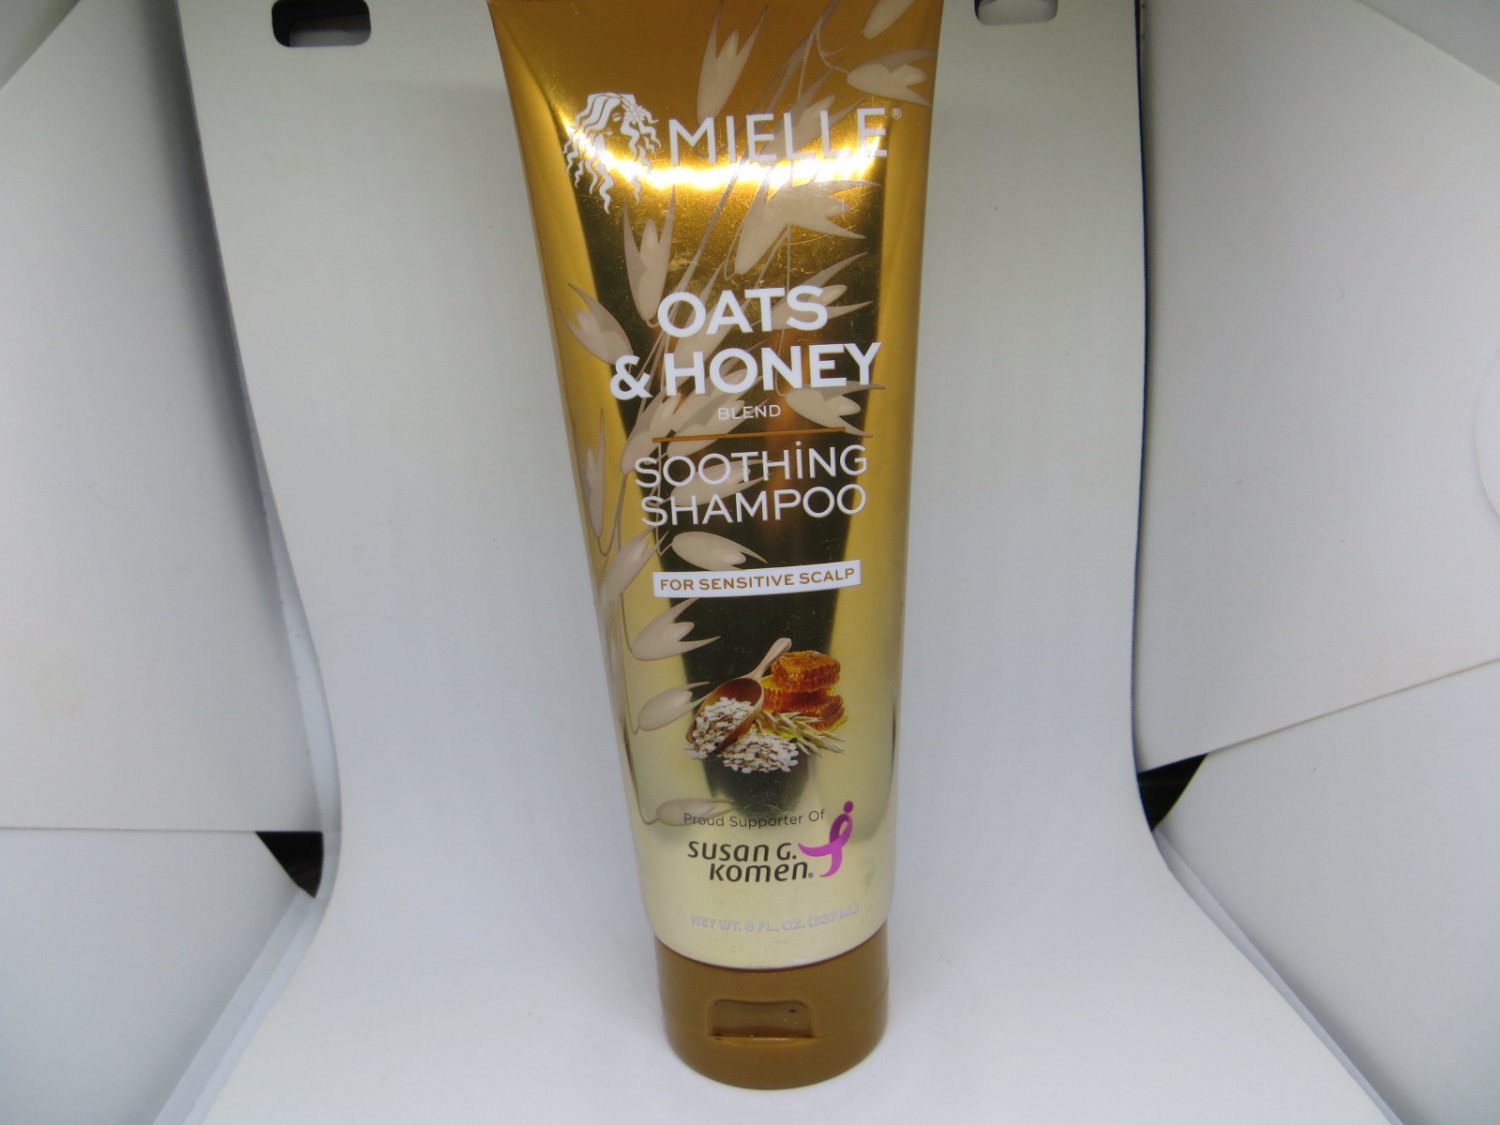 Mielle Oats & Honey Soothing Shampoo, 8oz